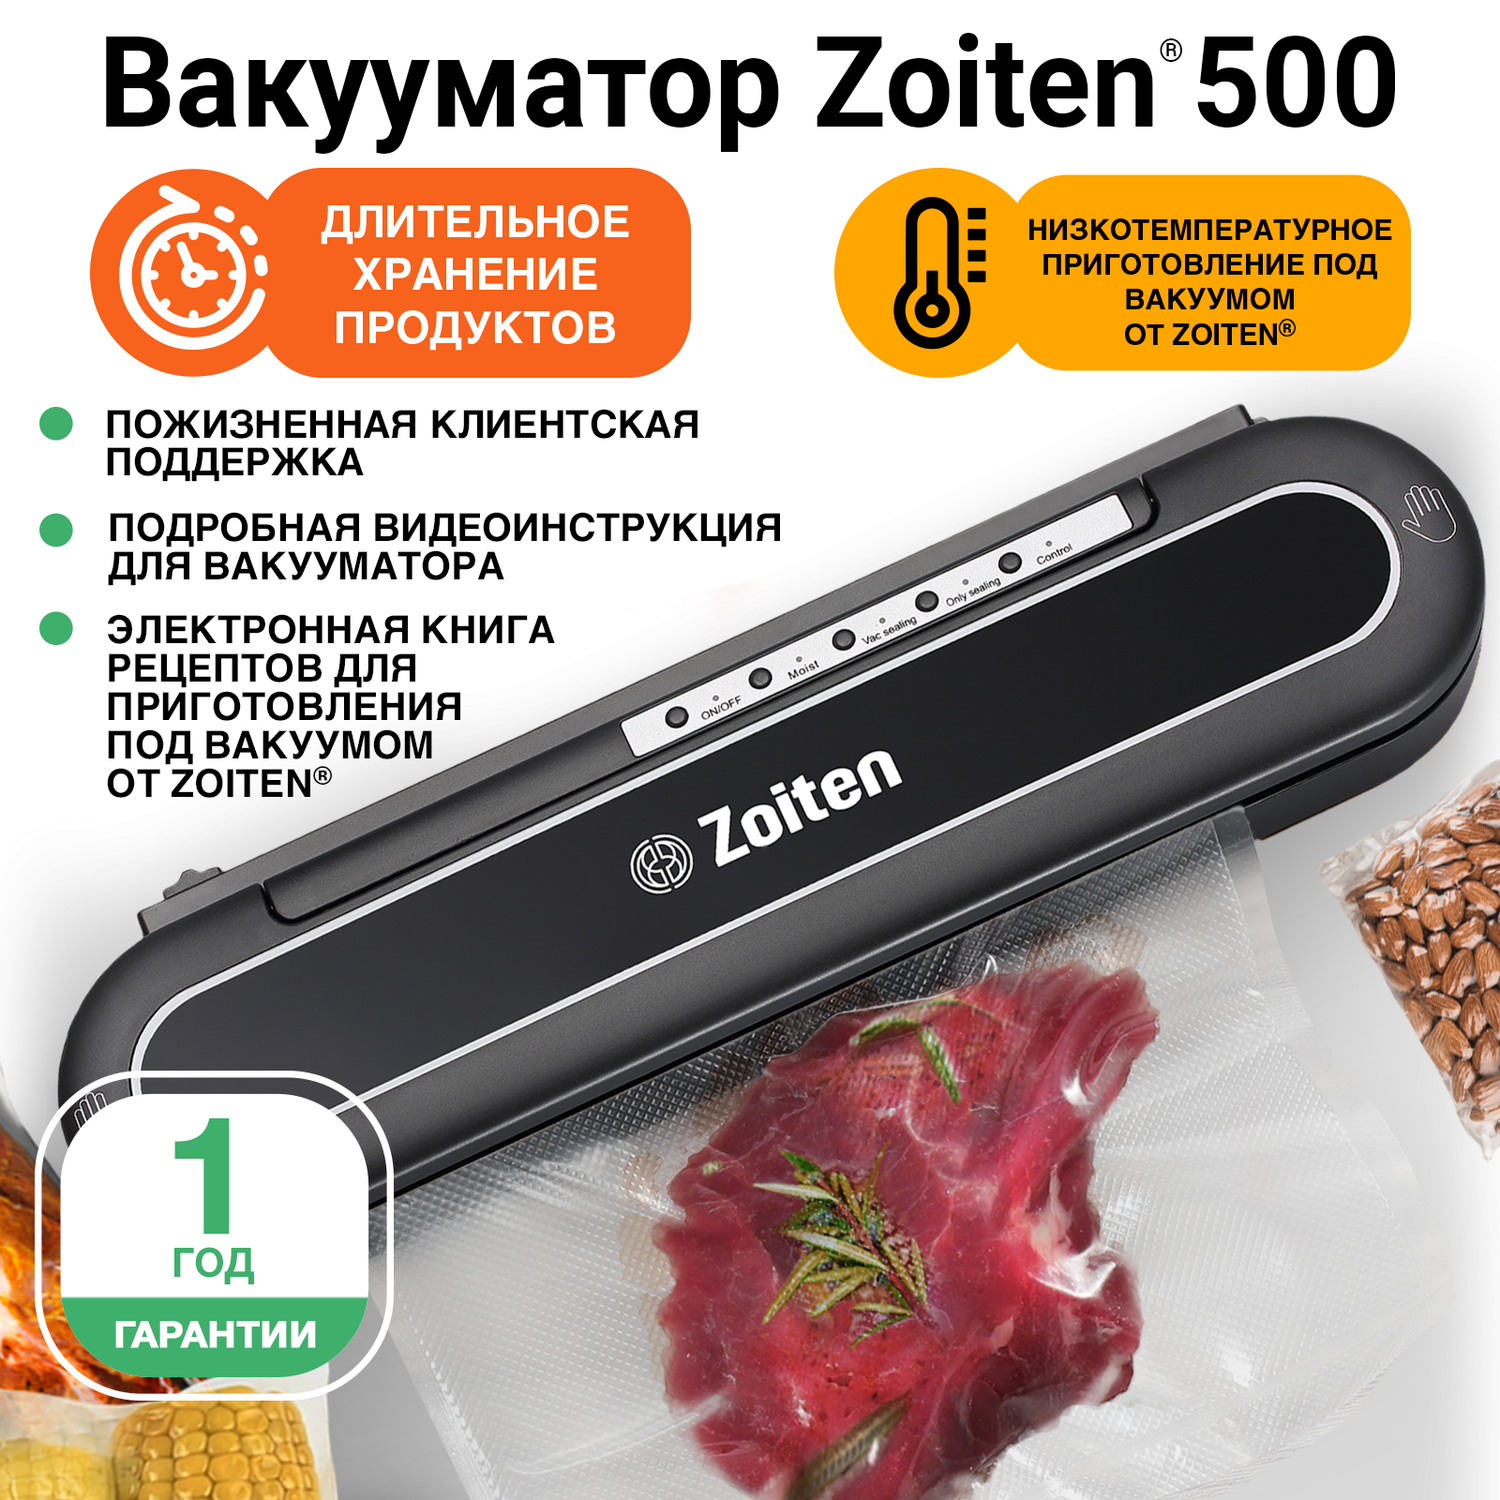 Купить кухонную технику для хранение продуктов в интернет магазине вороковский.рф